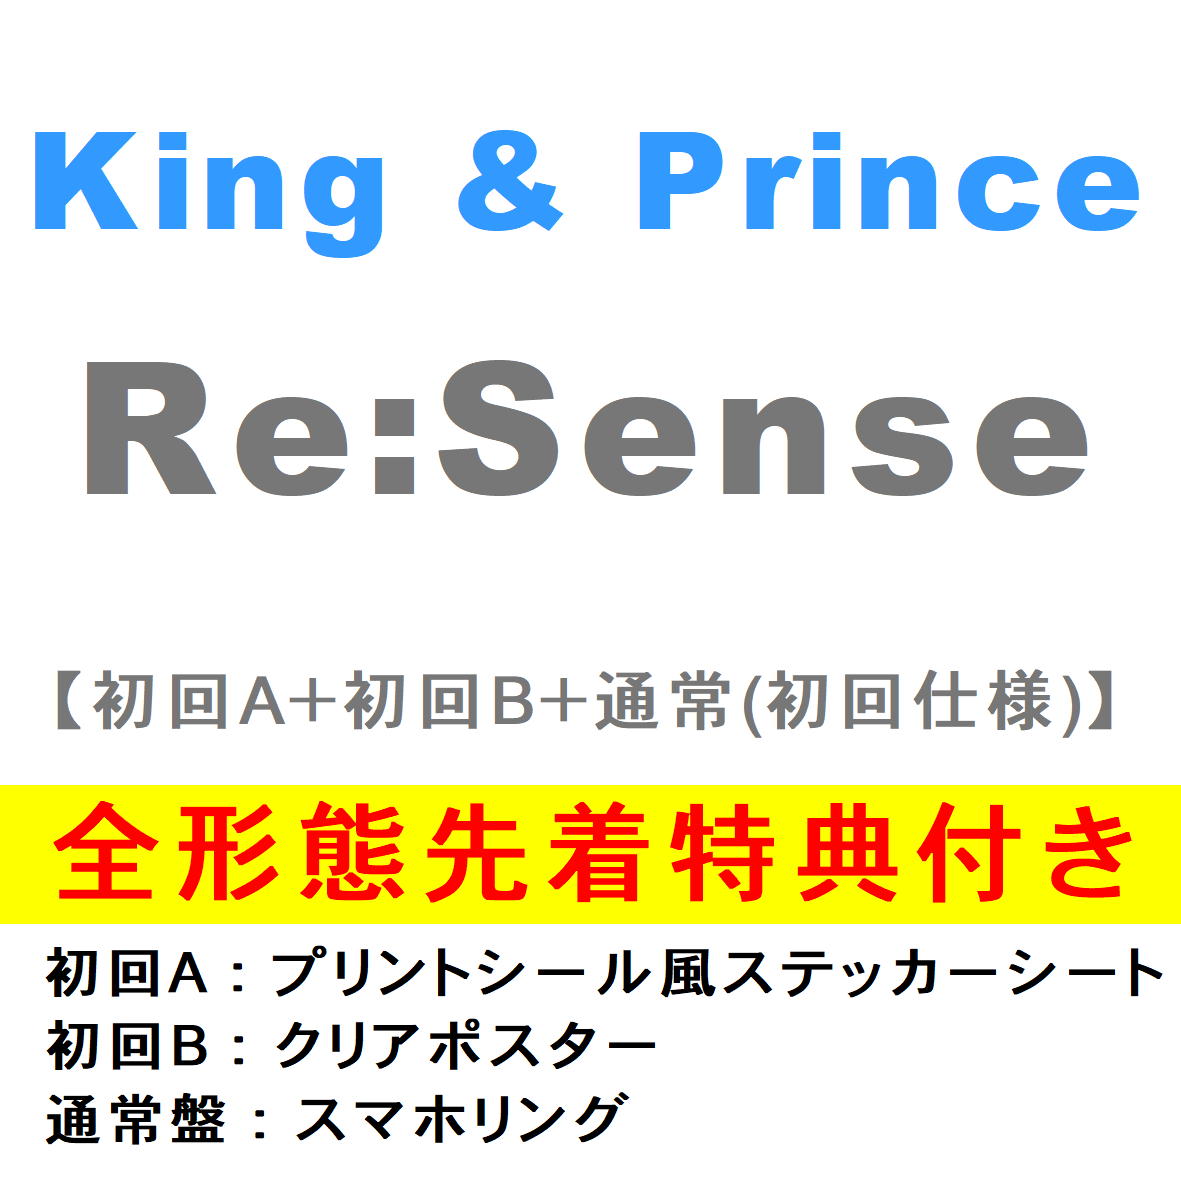 楽天市場 全3種セット 全3種特典付き King Prince Re Sense 初回盤a 初回盤b 通常盤 初回プレス Cd Upcj 9021 9022 9023 21 7 21発売 キンプリ ｃｄ メガネのサウンドエース